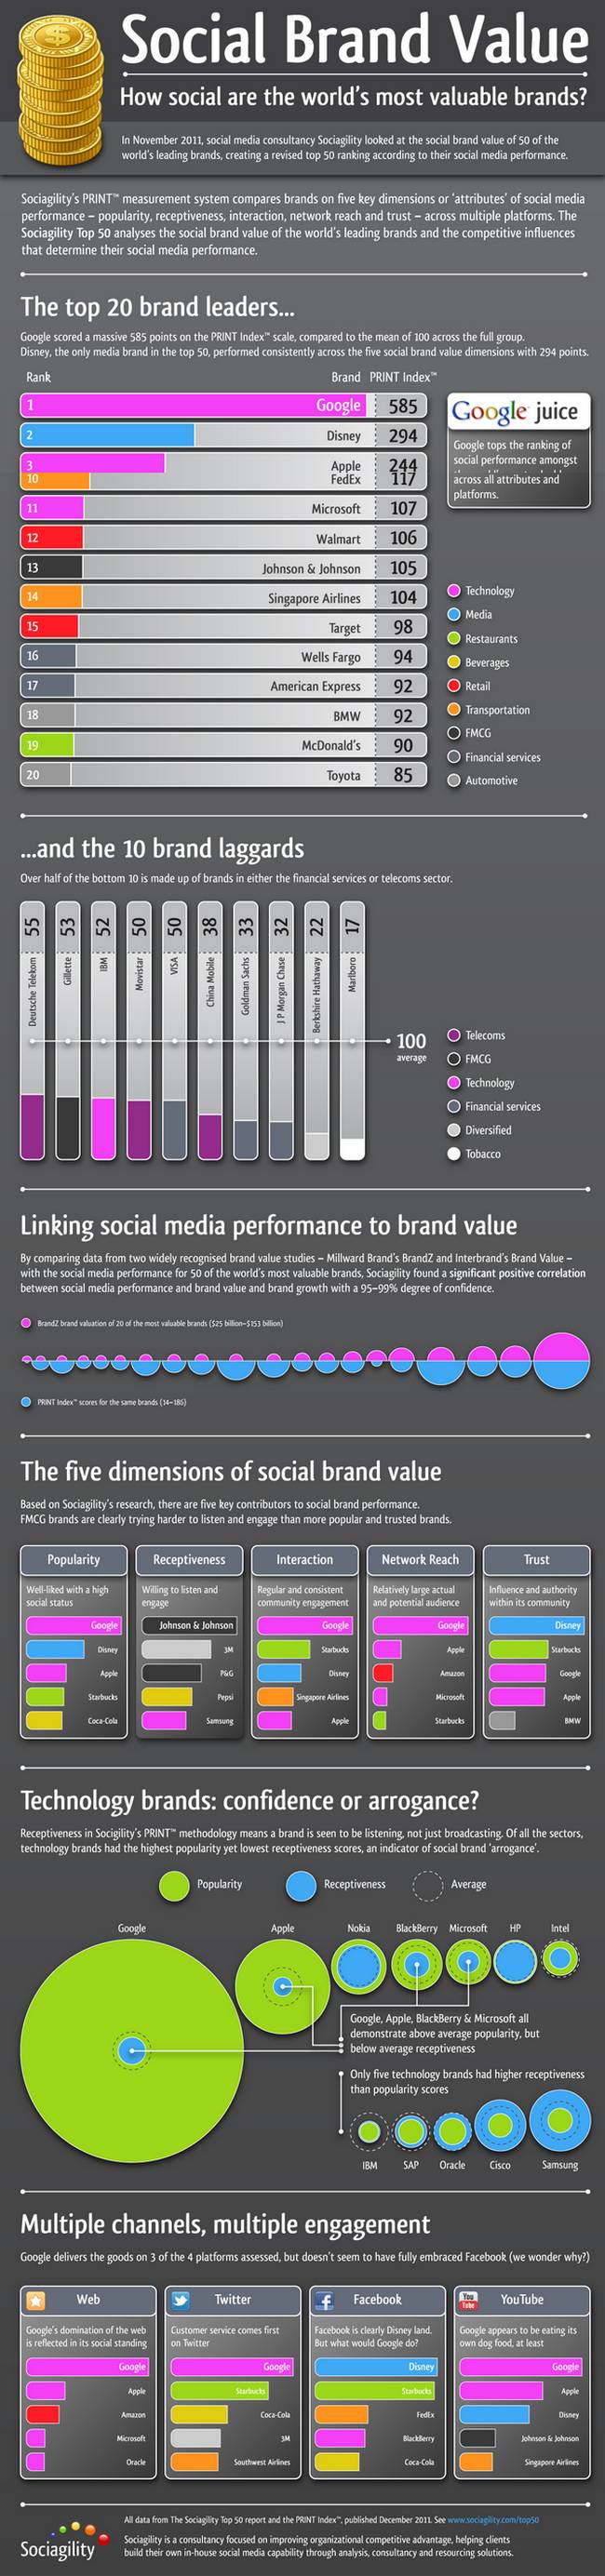 El valor social de las grandes marcas. ¿Cuál es más social? 1